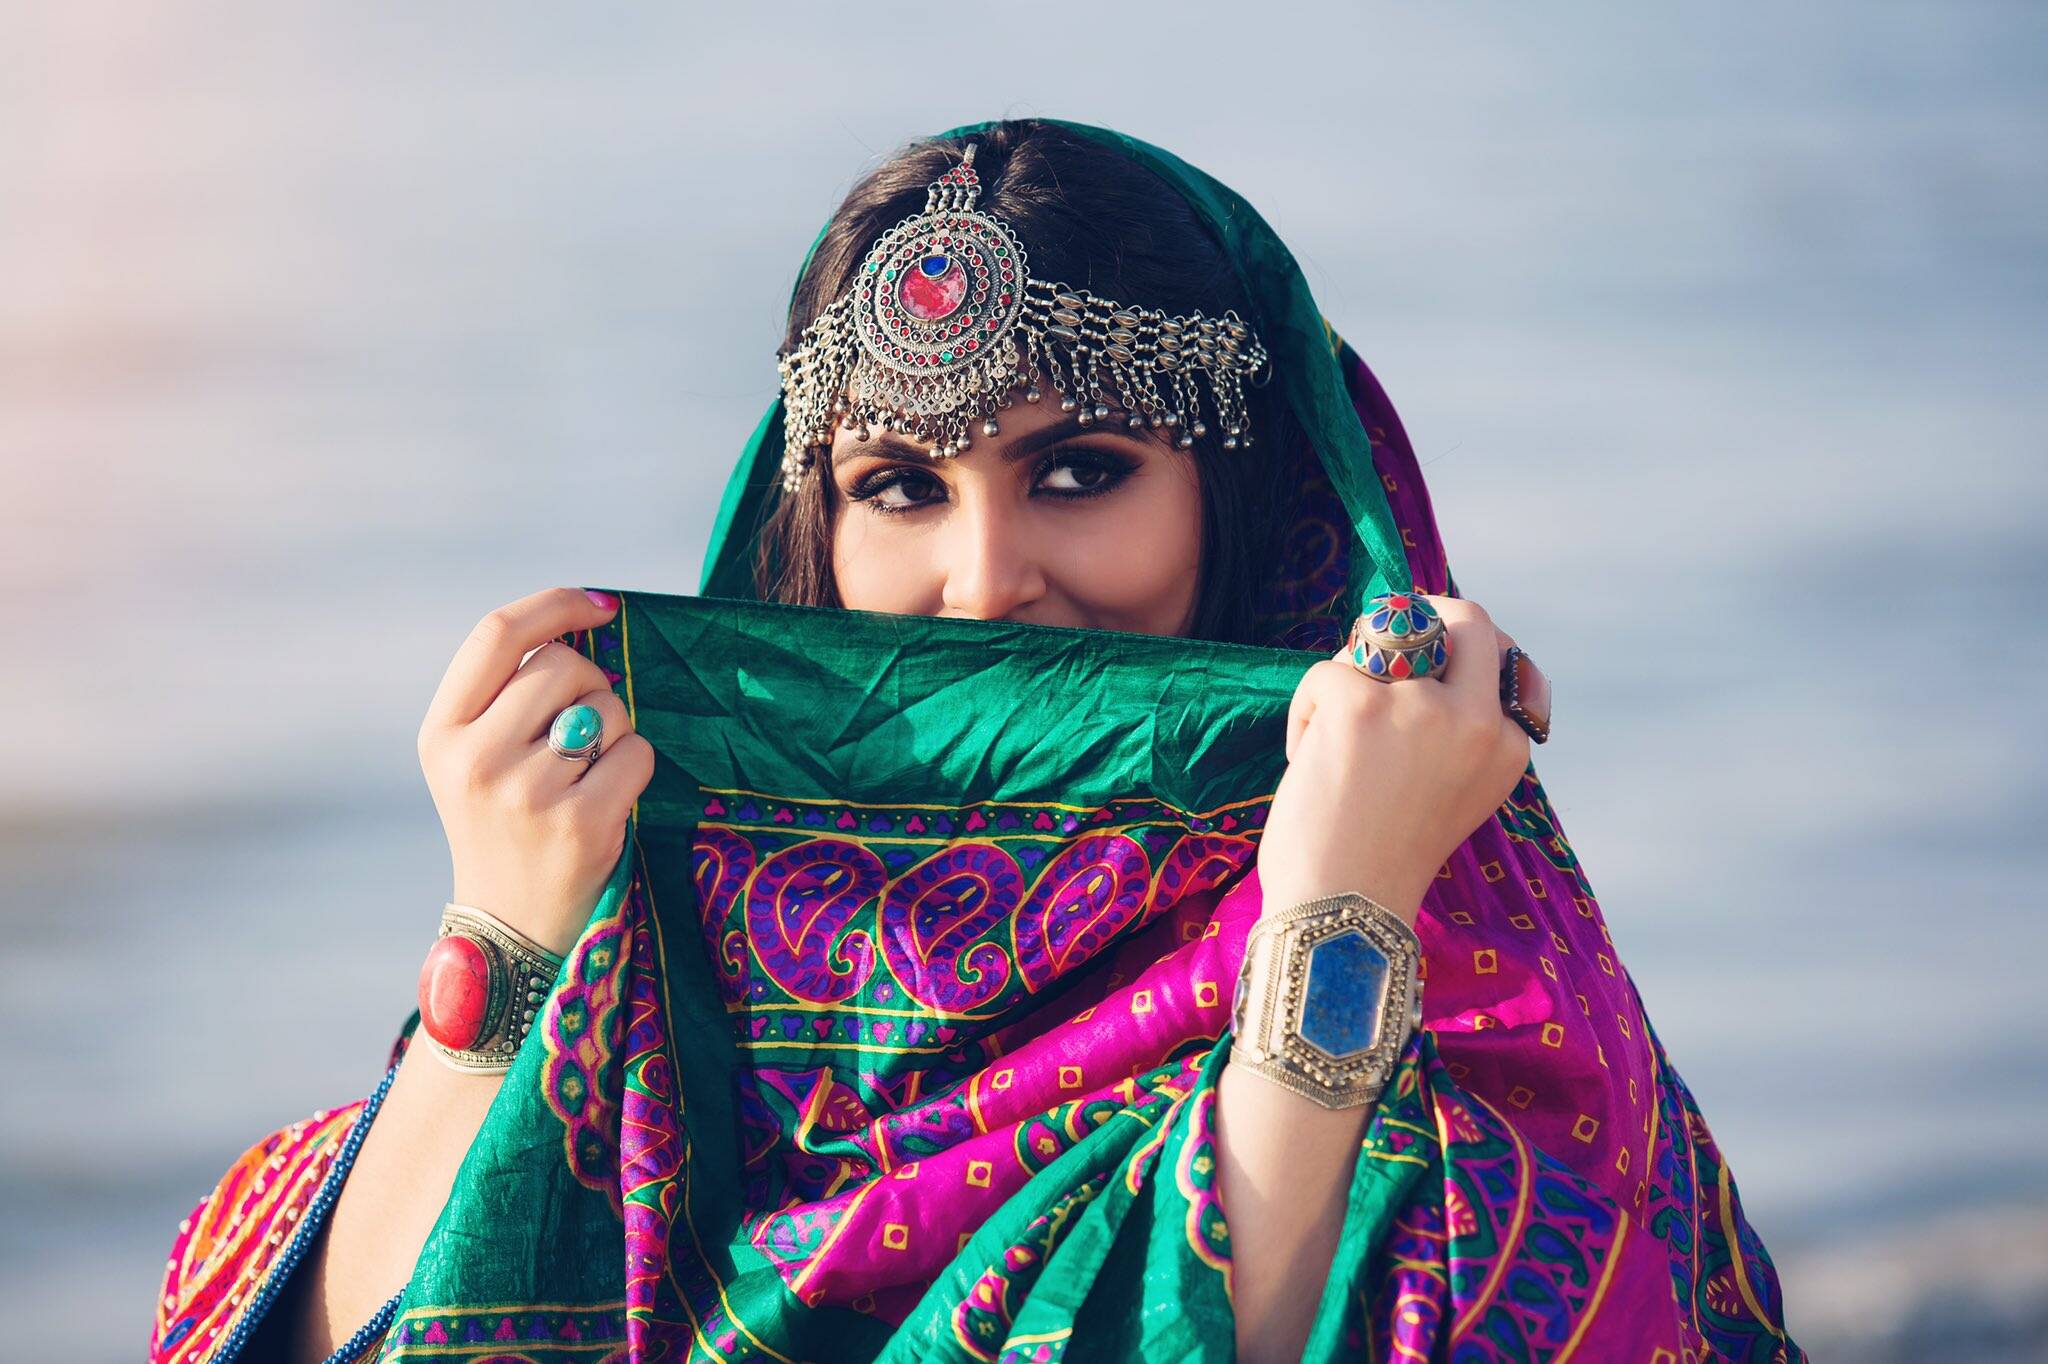 महिलांसाठी असलेल्या पारंपारिक अफगाणी कपड्यांमध्ये घोट्यापर्यंत असणारे घेरदार कुर्ते आहेत. या महिला डोके झाकण्यासाठी हेडस्कार्फही घालतात.